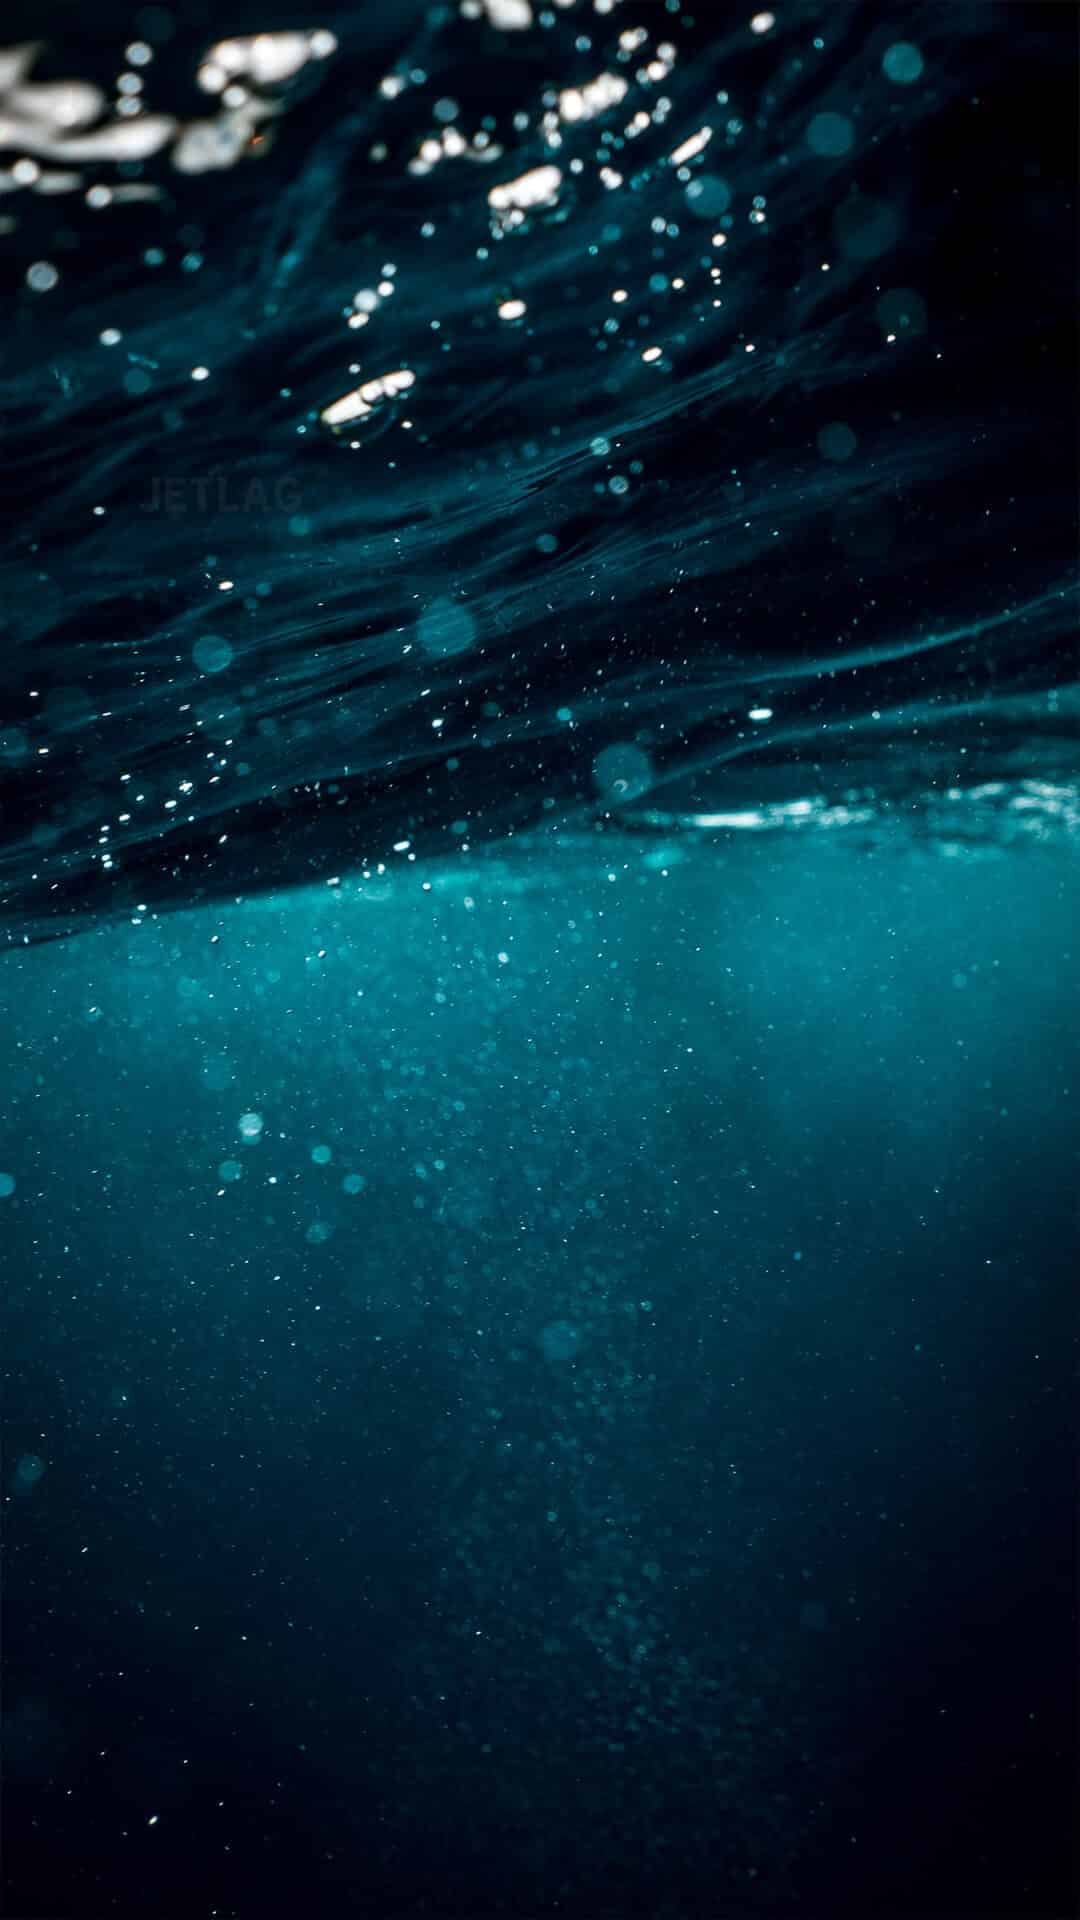 JETLAG-Underwater